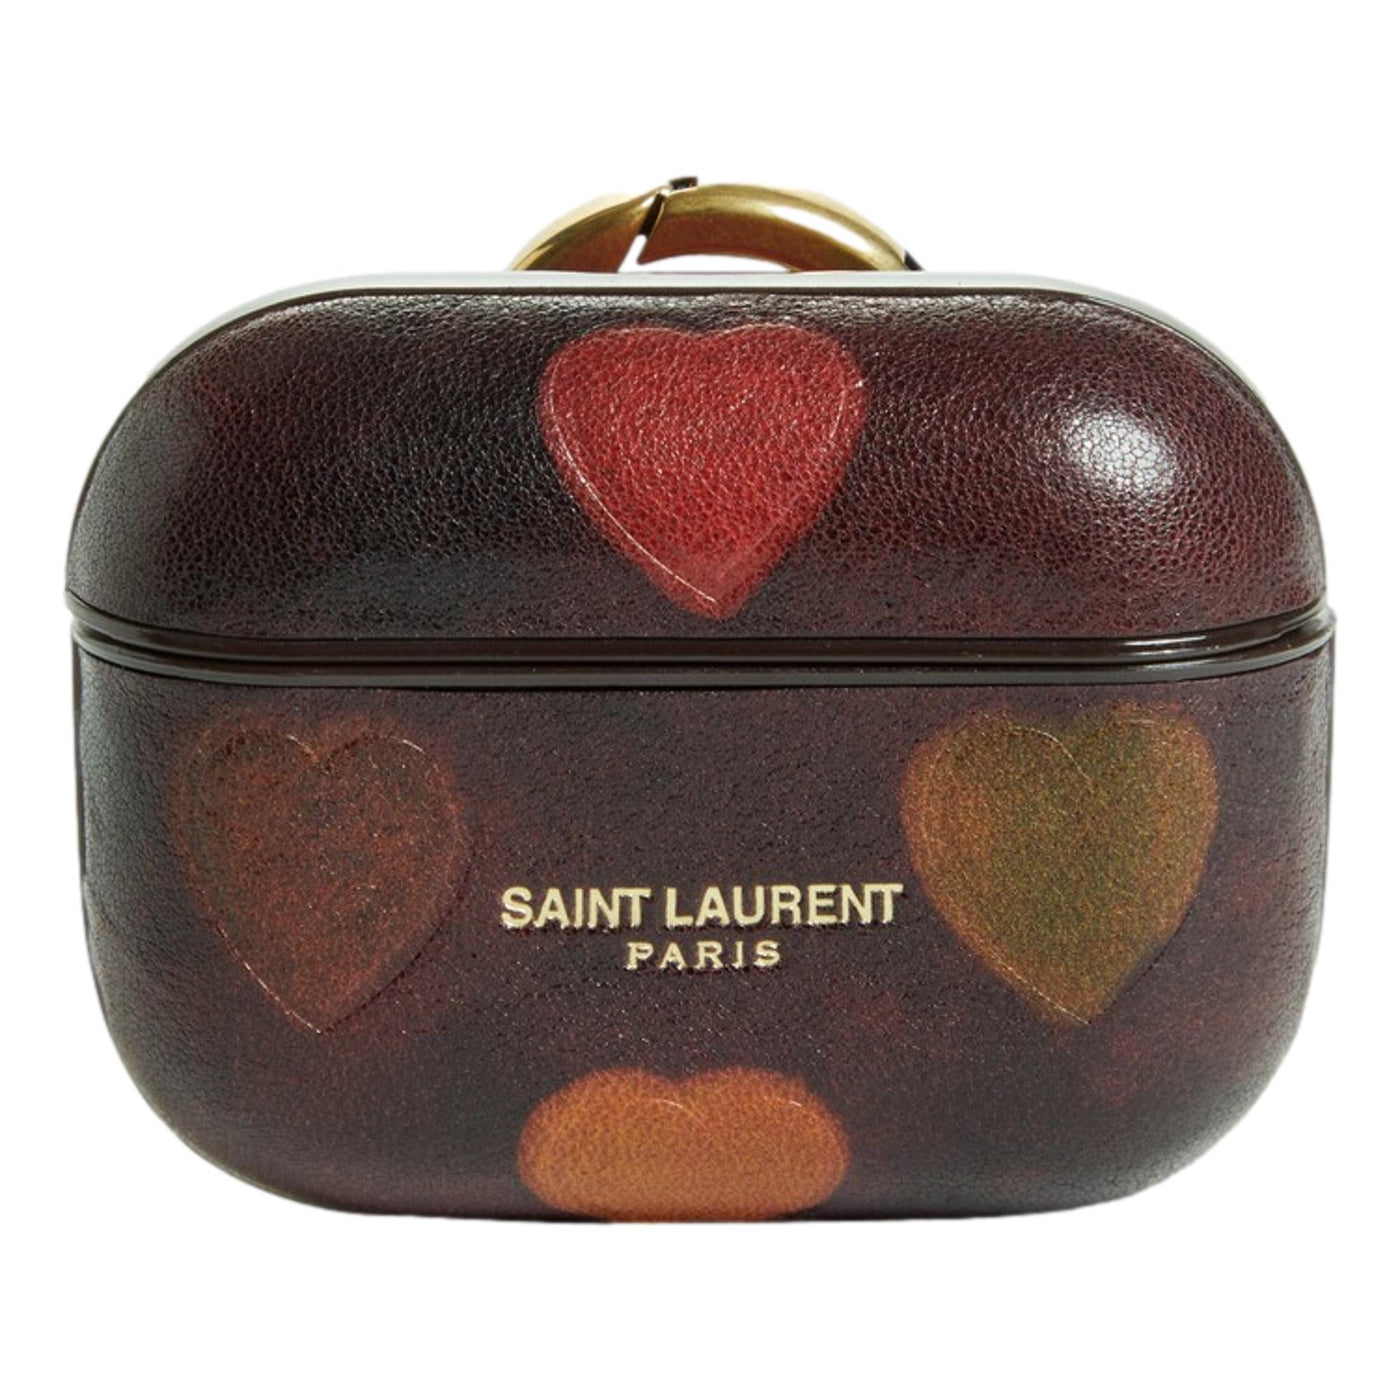 Saint Laurent Heart Printed Brown Textured Leather Airpods Case 641954 - LUXURYMRKT